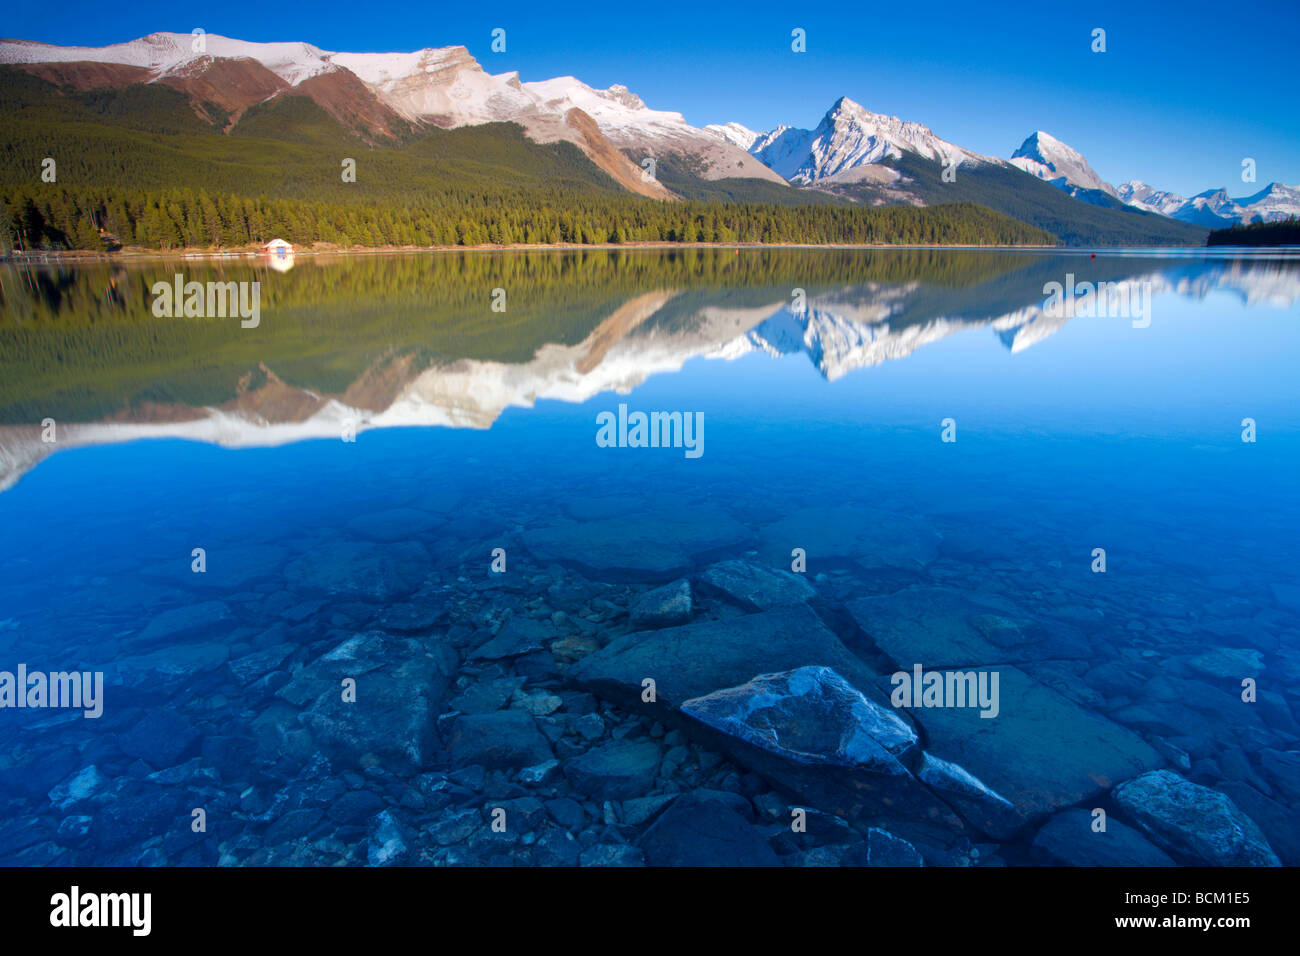 L'eau claire avec des réflexions au lac Maligne Canadian Rockies Jasper National Park, Alberta, Canada Octobre 2006 Banque D'Images